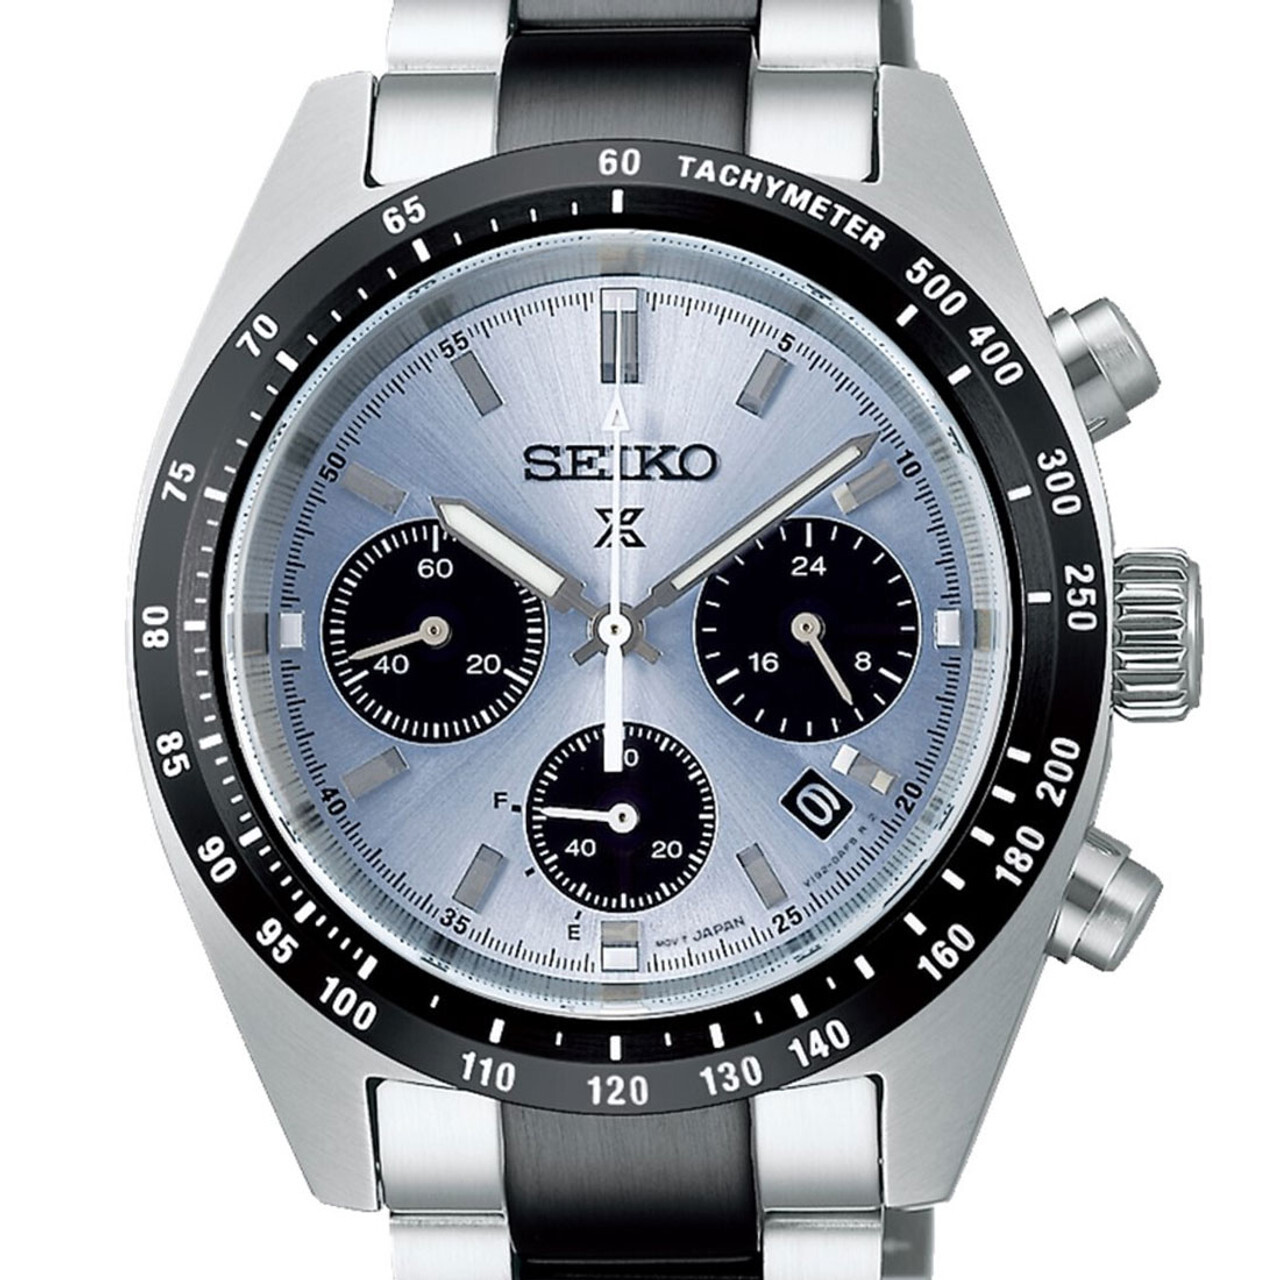 reloj hombre deportivo Seiko Prospex Solar SpeedTimer SSC909P1 "Crystal Trophy" Edición Limitada 39mm Cristal de Zafiro curvado 100m WR